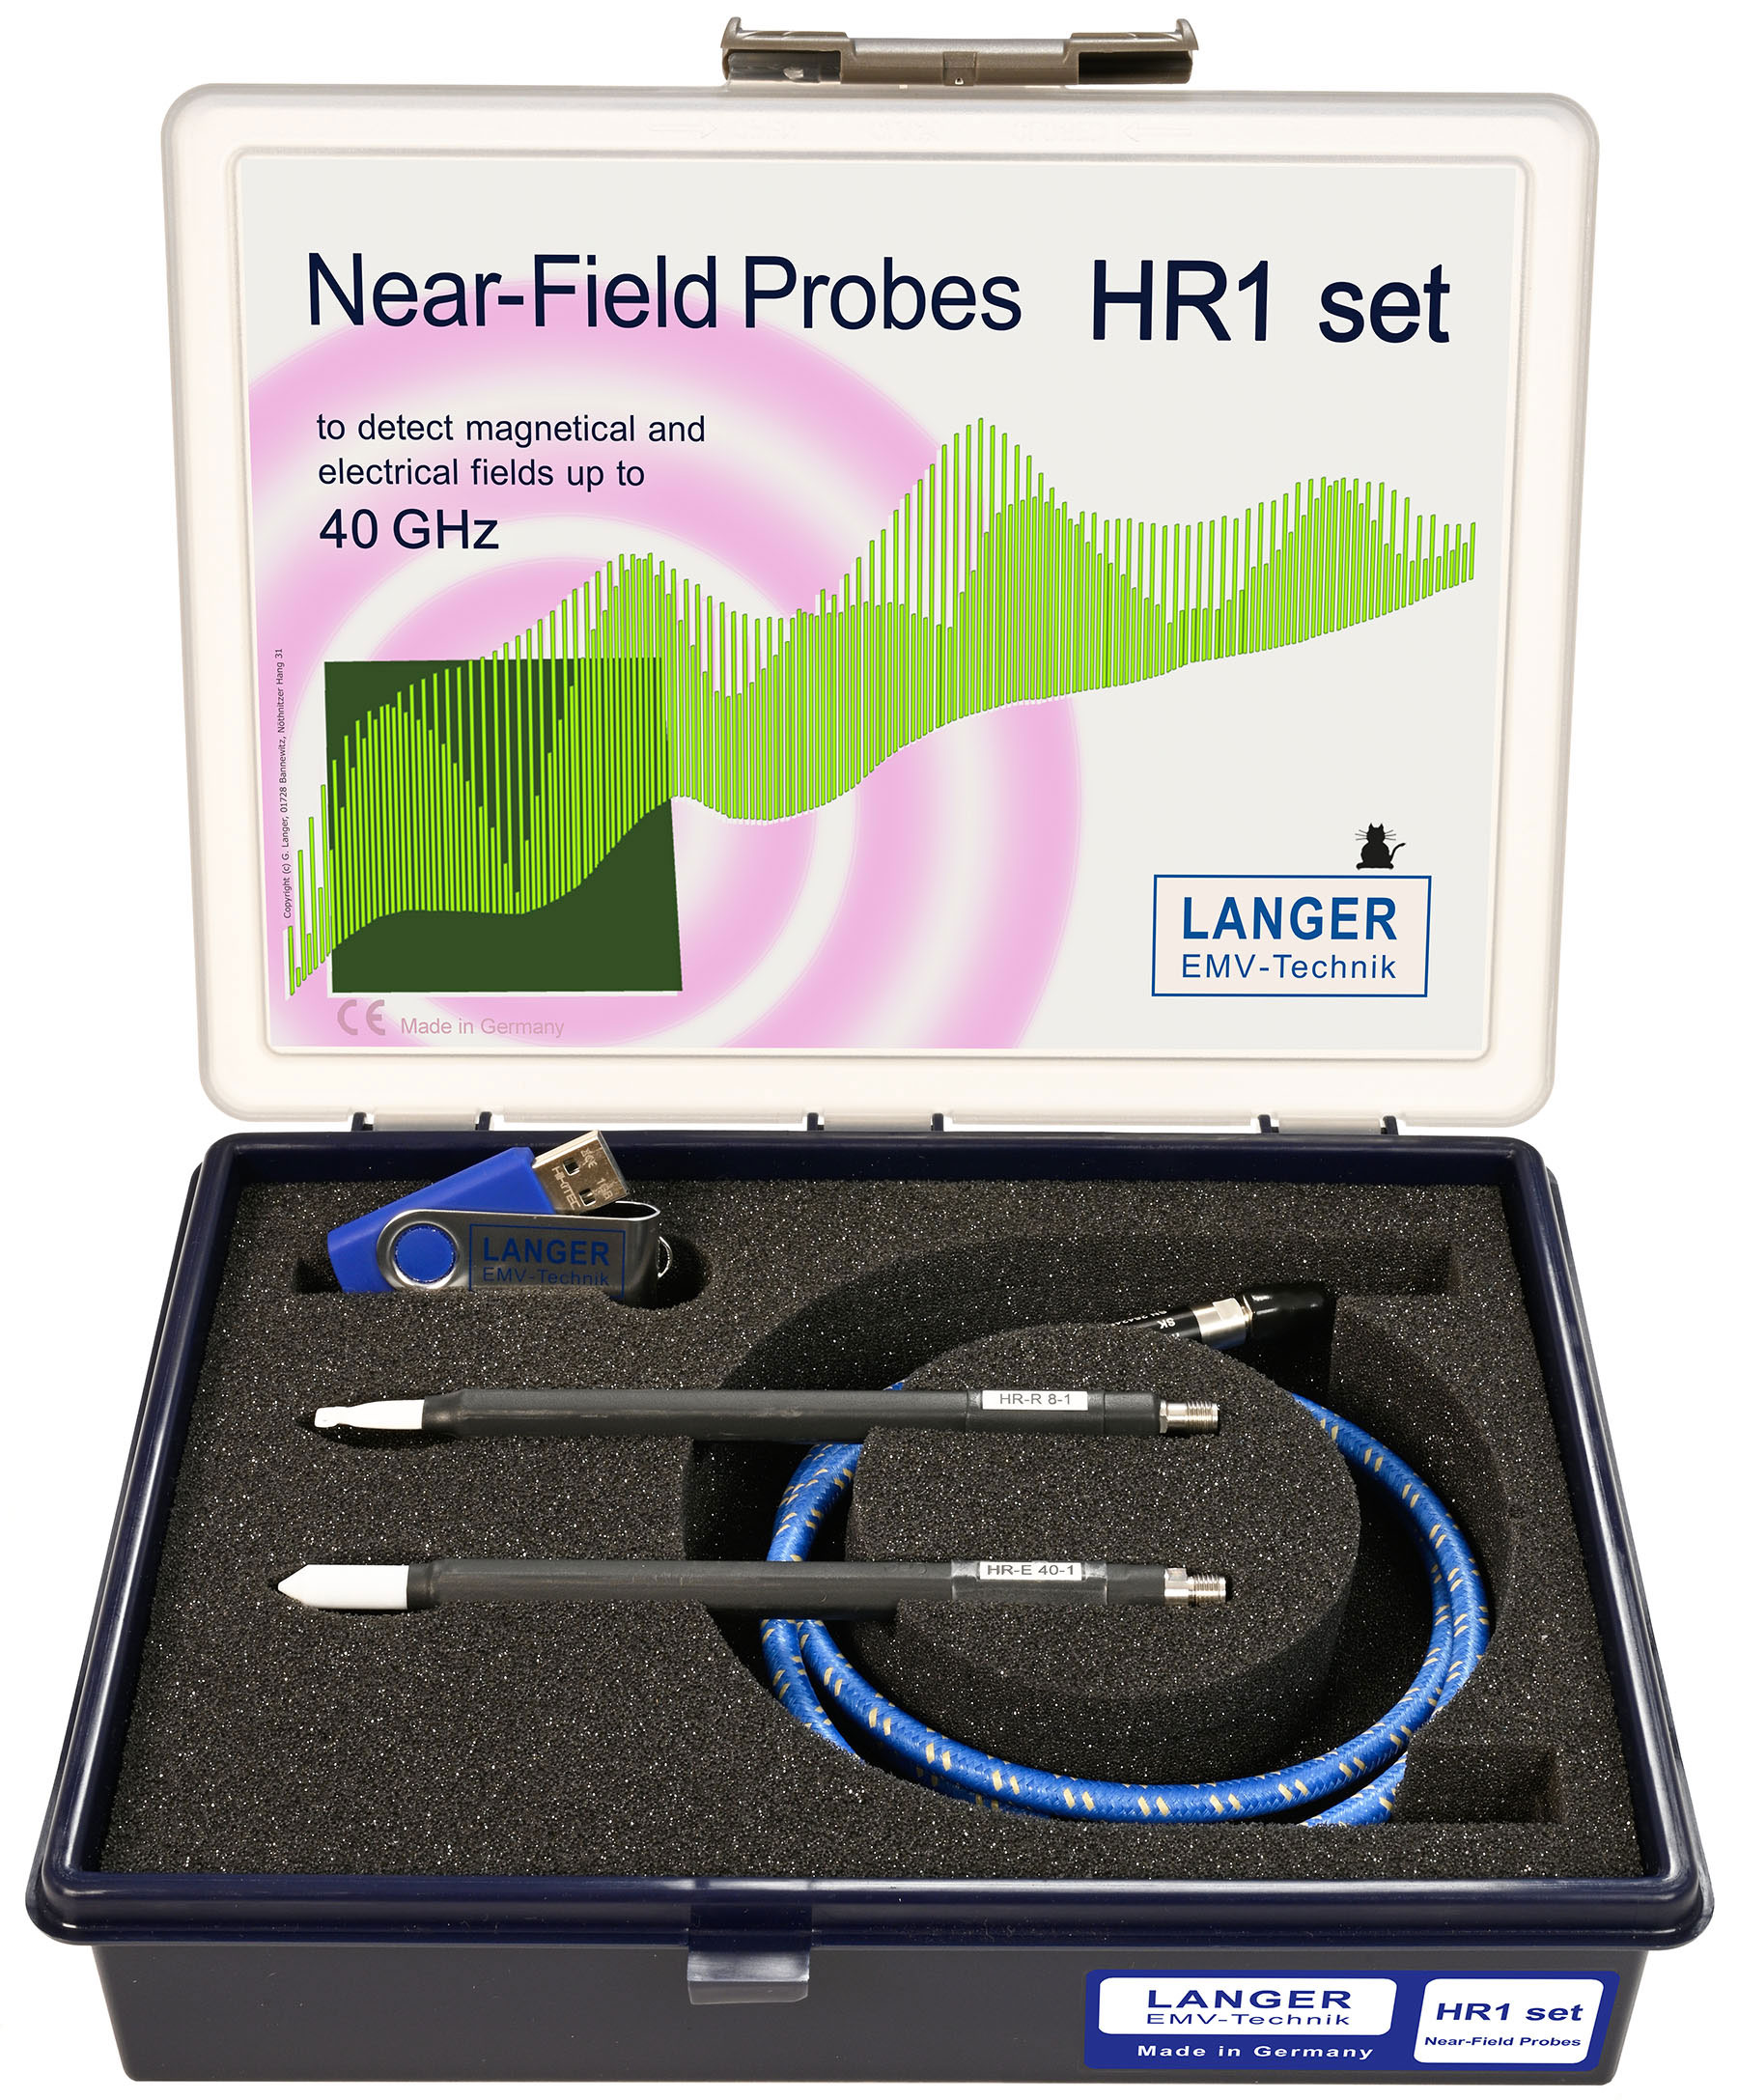 HR1 set, Near-Field Probes up to 40 GHz